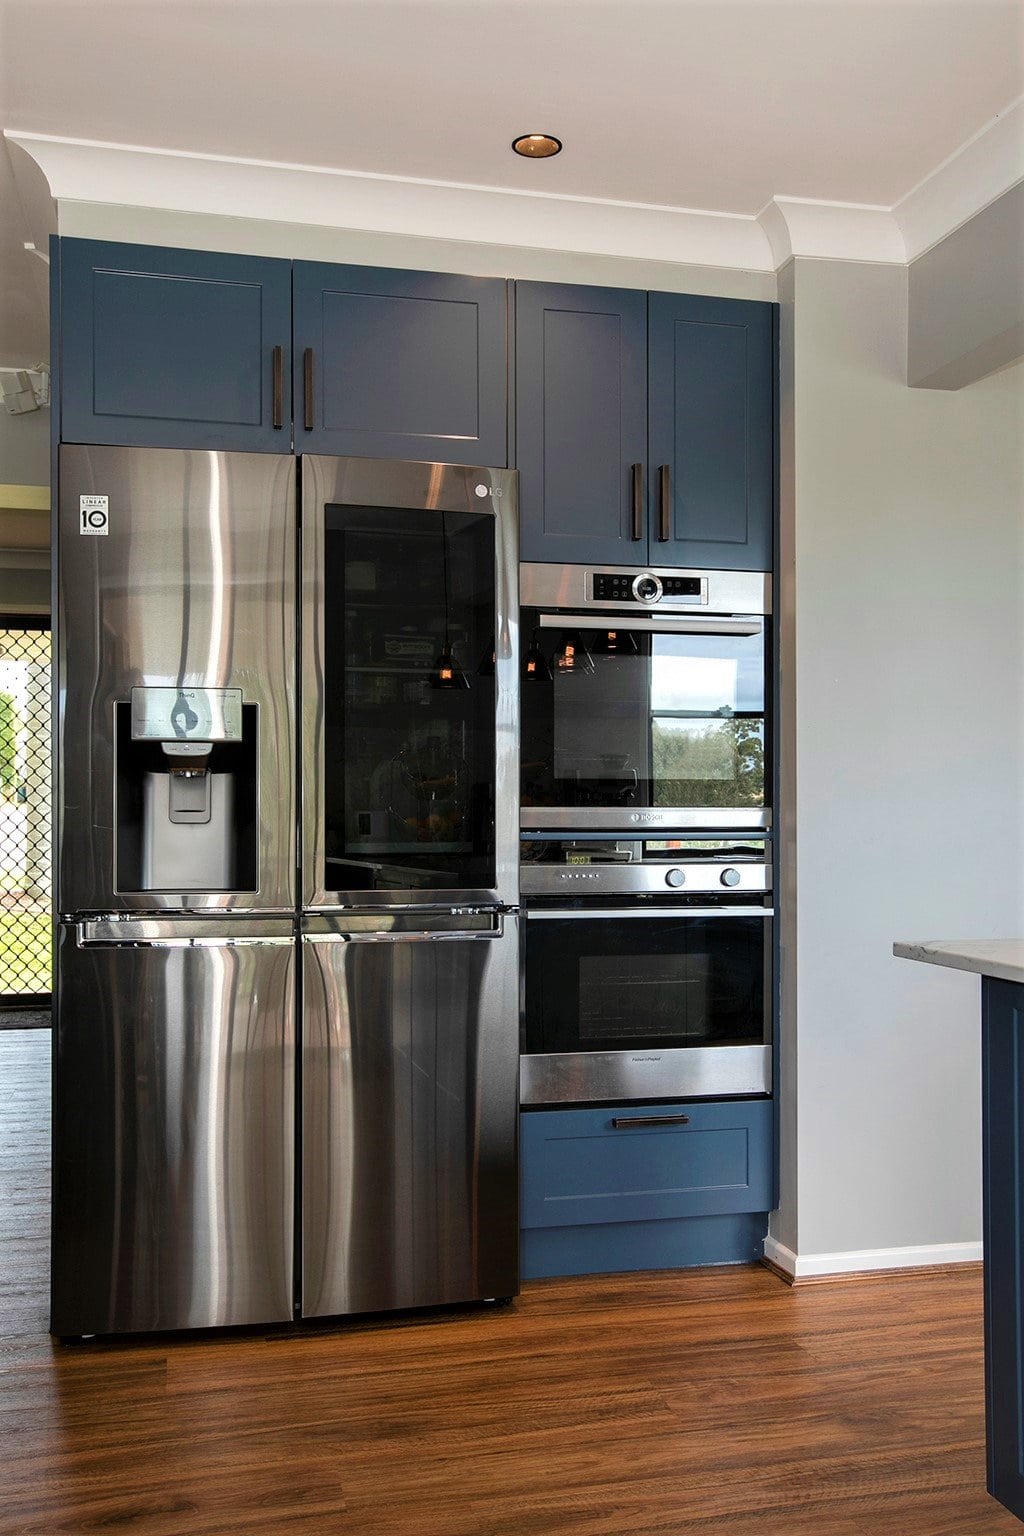 fridge next to oven in kitchen renovation by Modern Kitchens Northside Brisbane